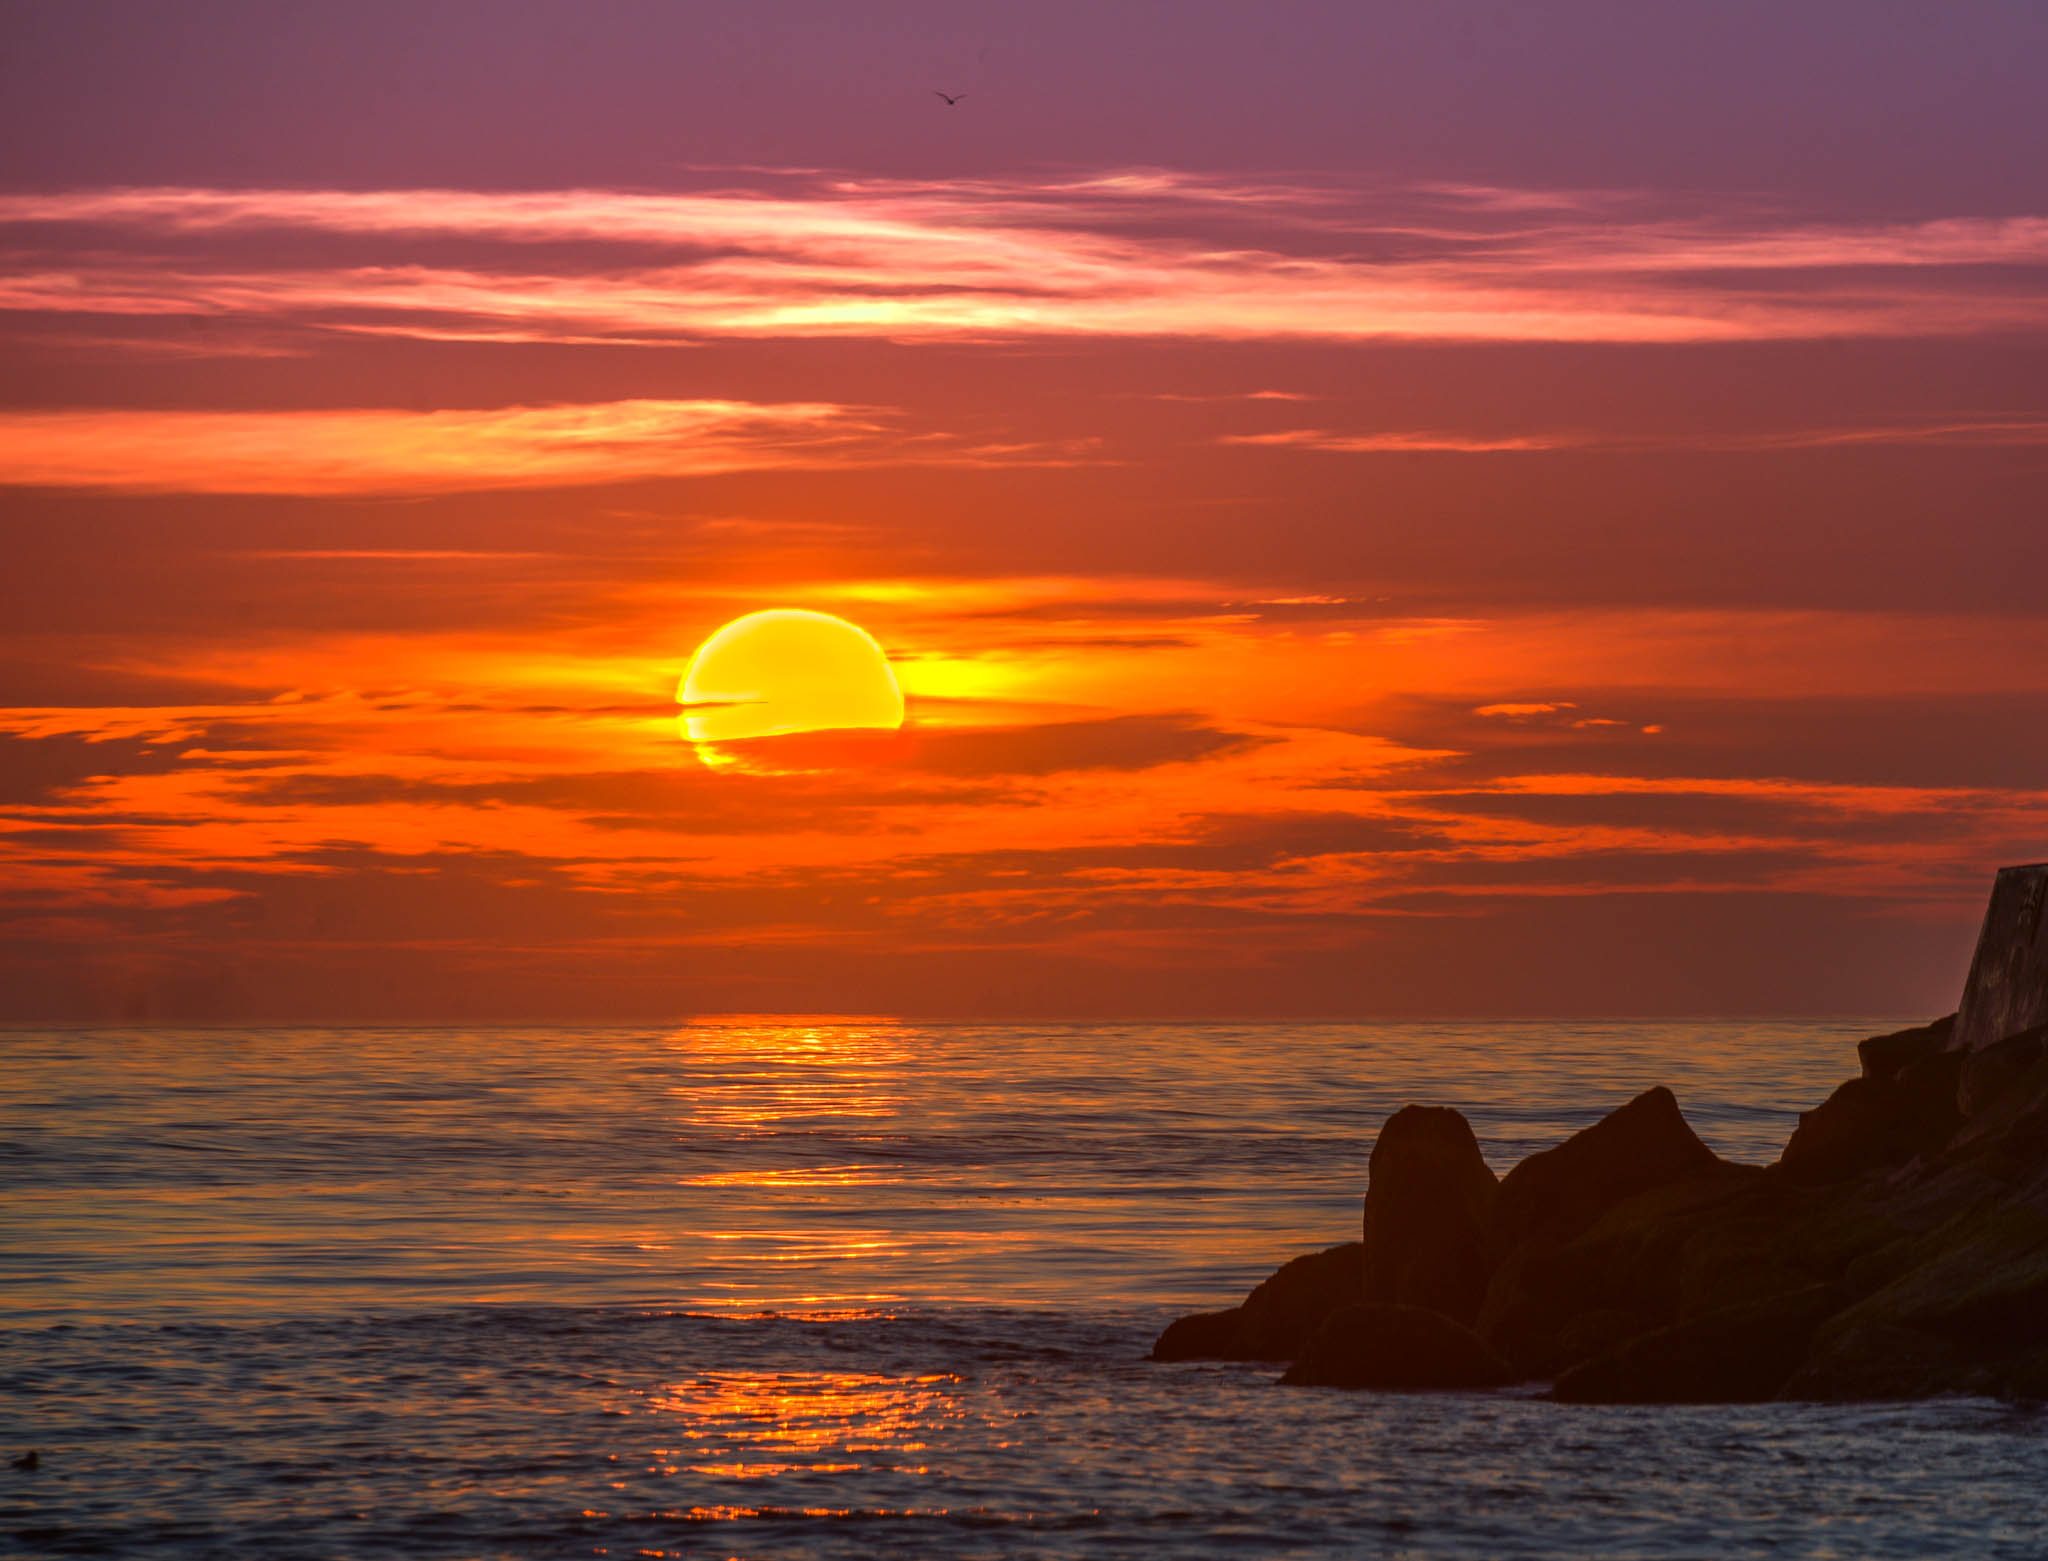 A sunrise or sunset image.